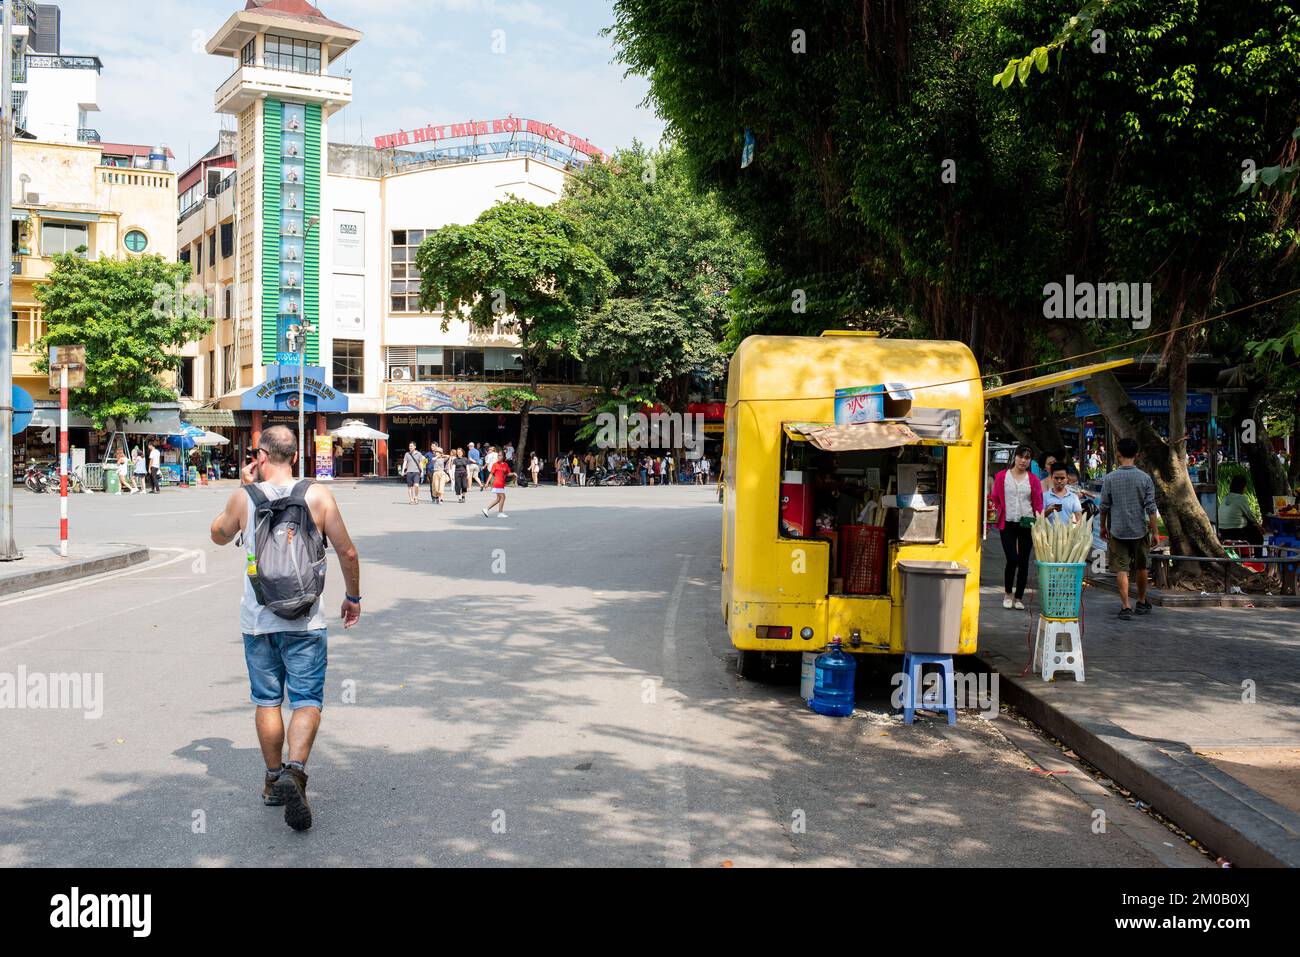 Hanoi, Vietnam - 16. September 2018: Erkundung von Hanoi: Ein Tourist in Shorts und Wanderstiefeln geht an einem Straßenstand im Stadtzentrum vorbei Stockfoto